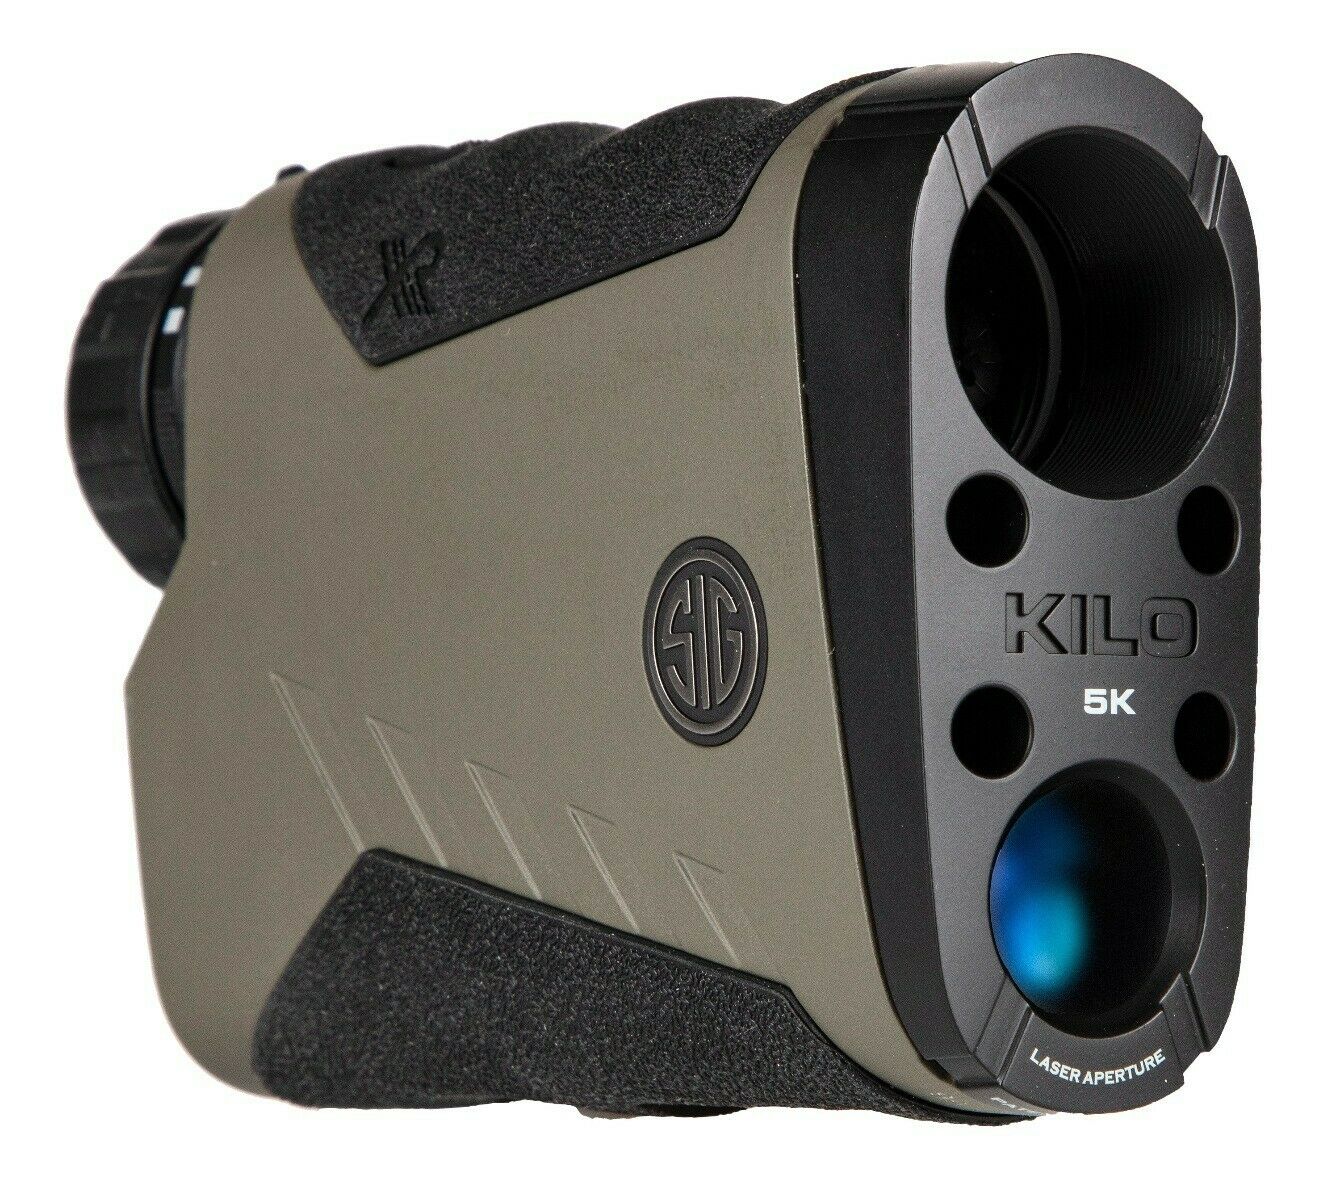 Sig Sauer KILO5K 7x25mm BDX 2.0 Laser Rangefinder, Red OLED Display - SOK5K705 - image 1 of 3